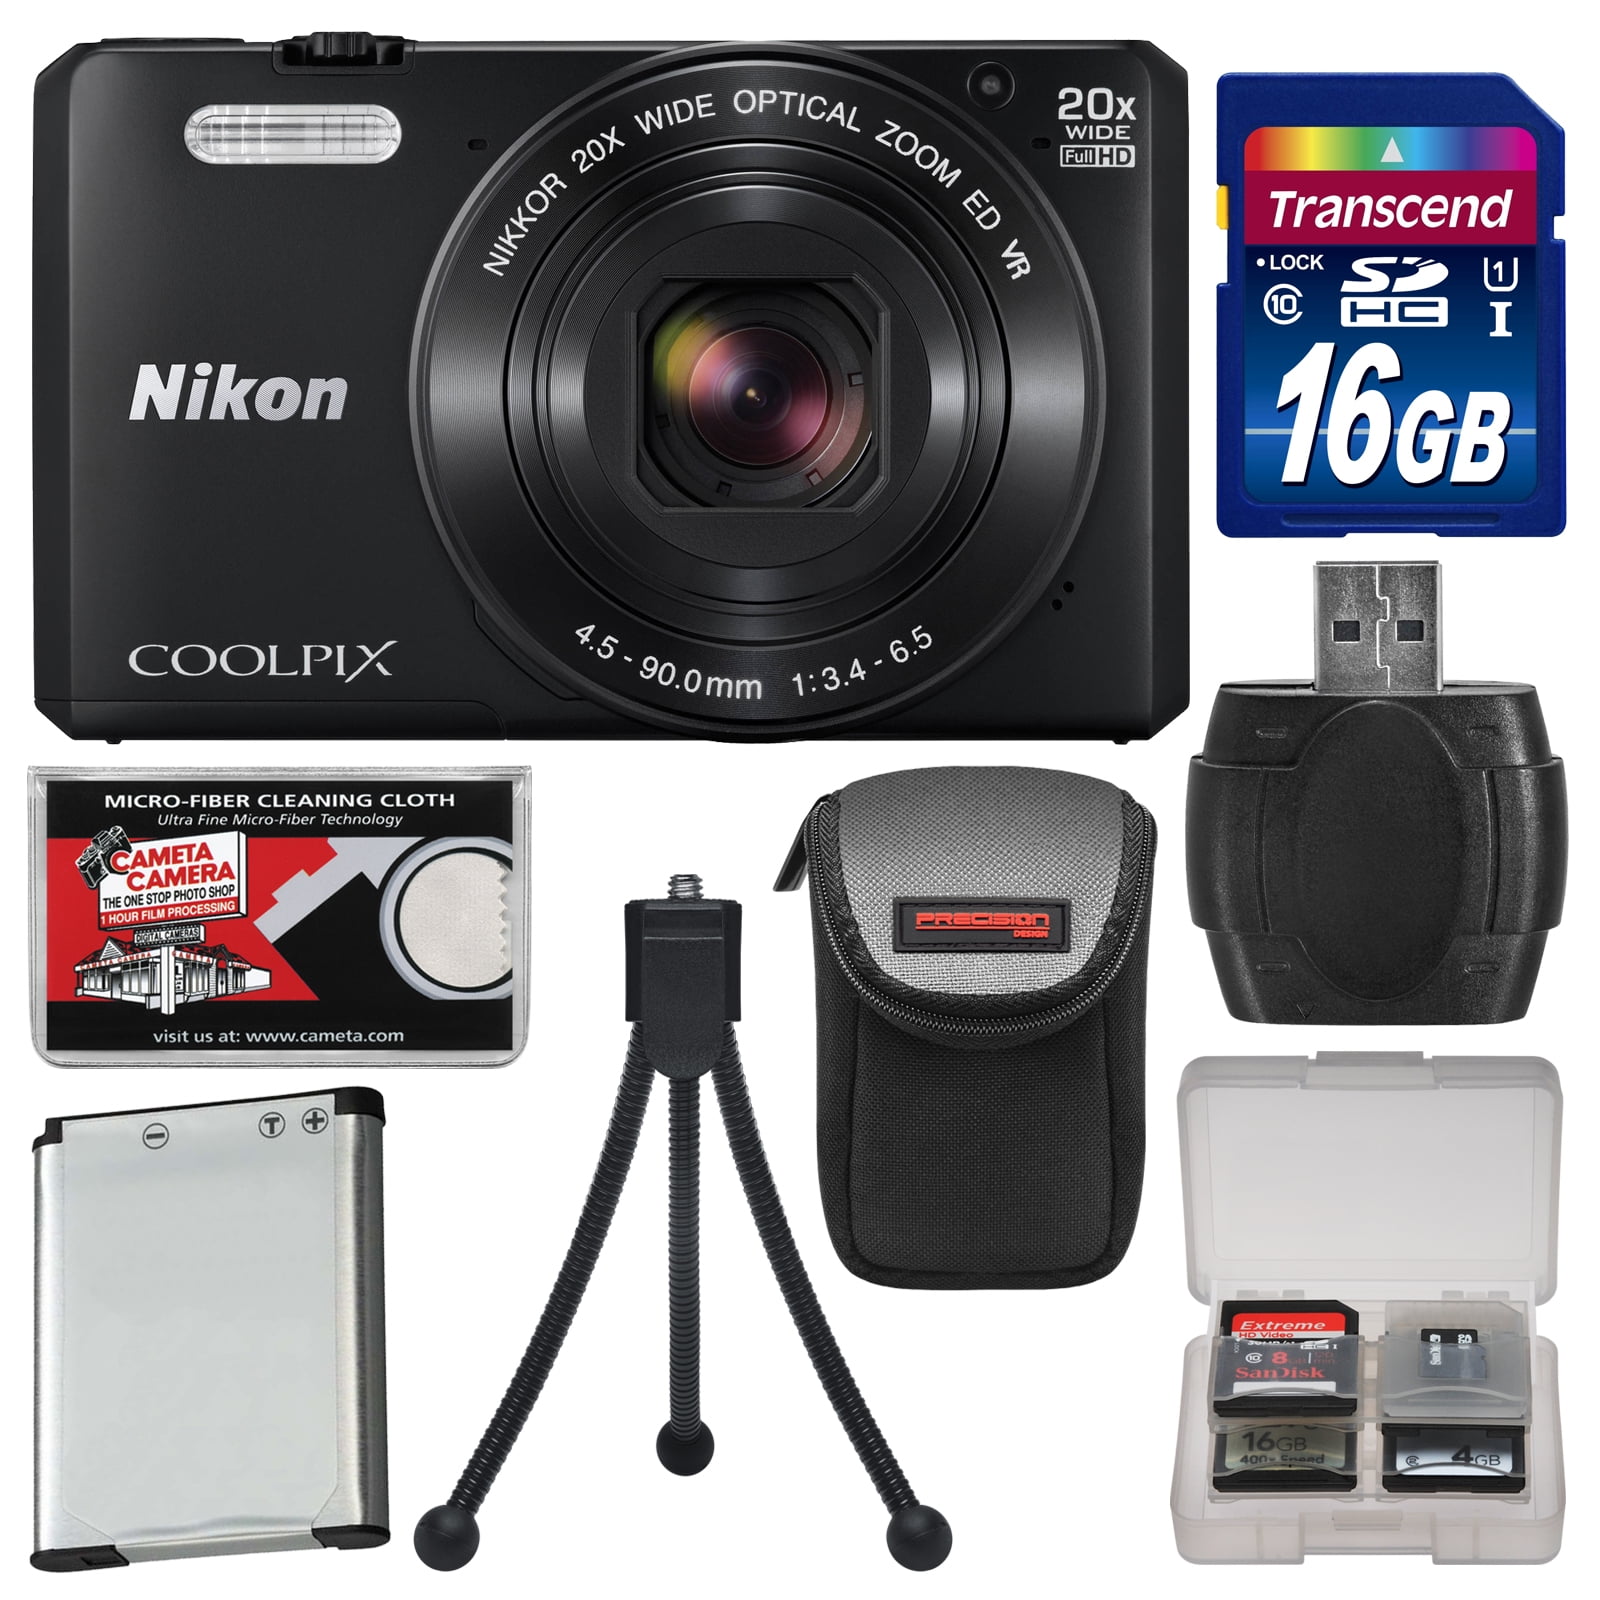 Nikon Coolpix S Wi Fi Digital Camera Black with GB Card +